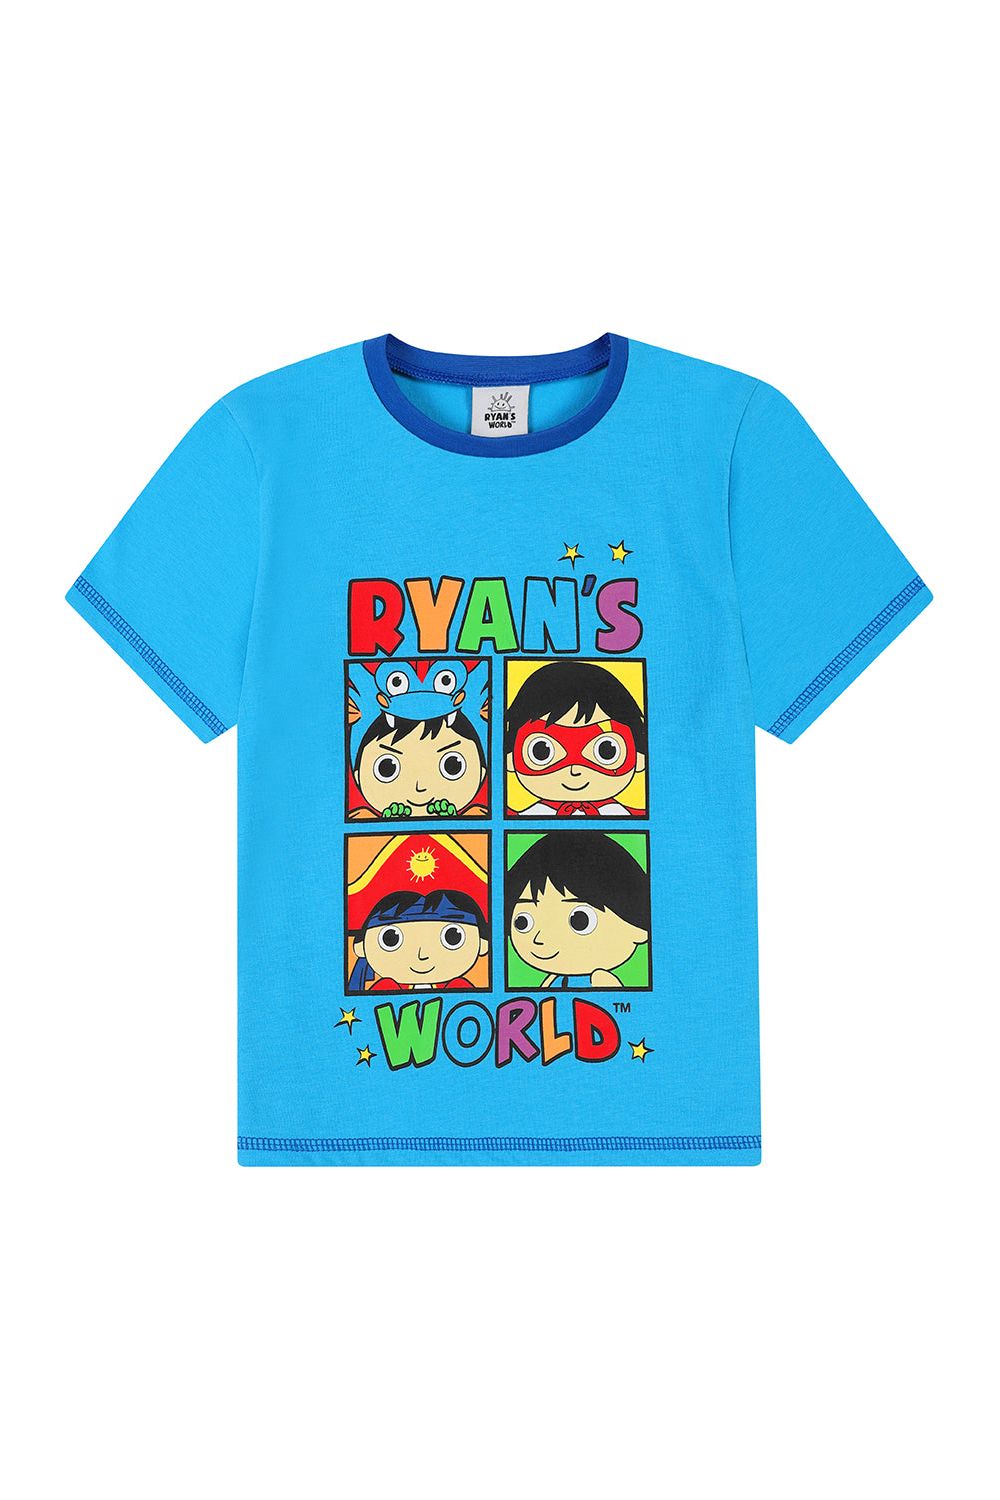 Boys Ryan's World Short Pyjamas - Pyjamas.com